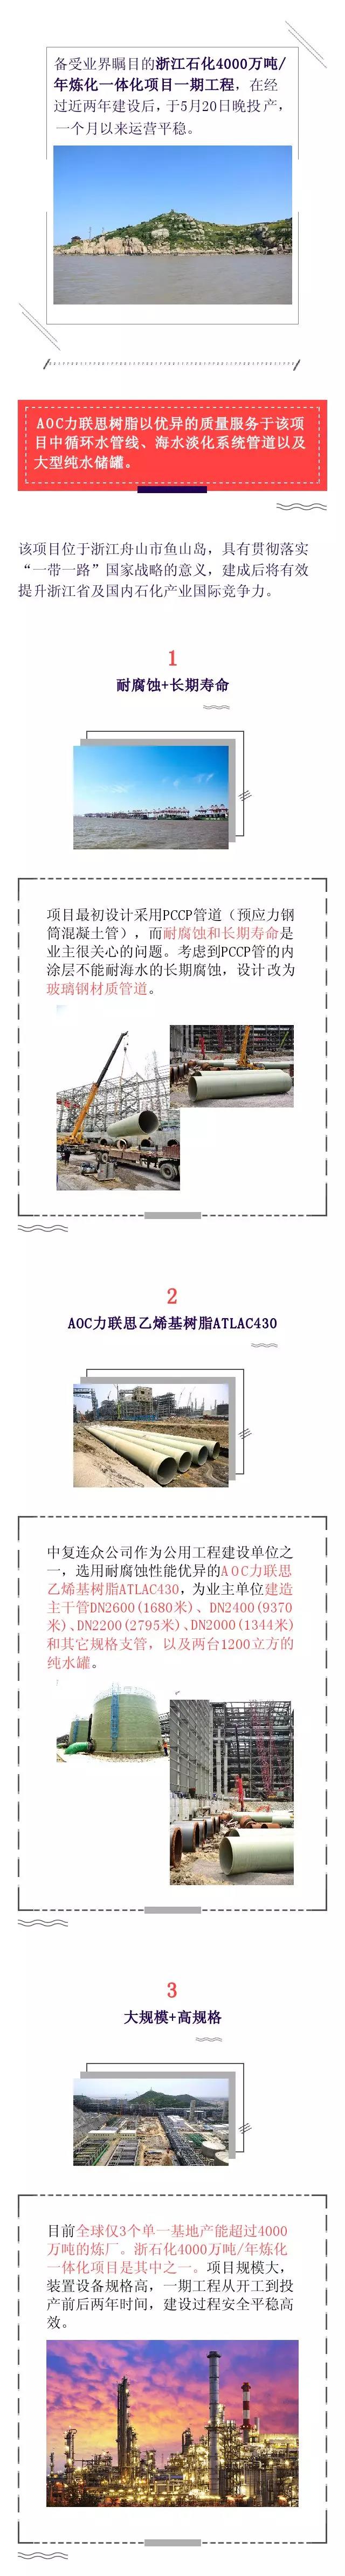 广东博皓战略合作伙伴——AOC力联思树脂应用于浙石化4000万吨/年炼化一体化项目